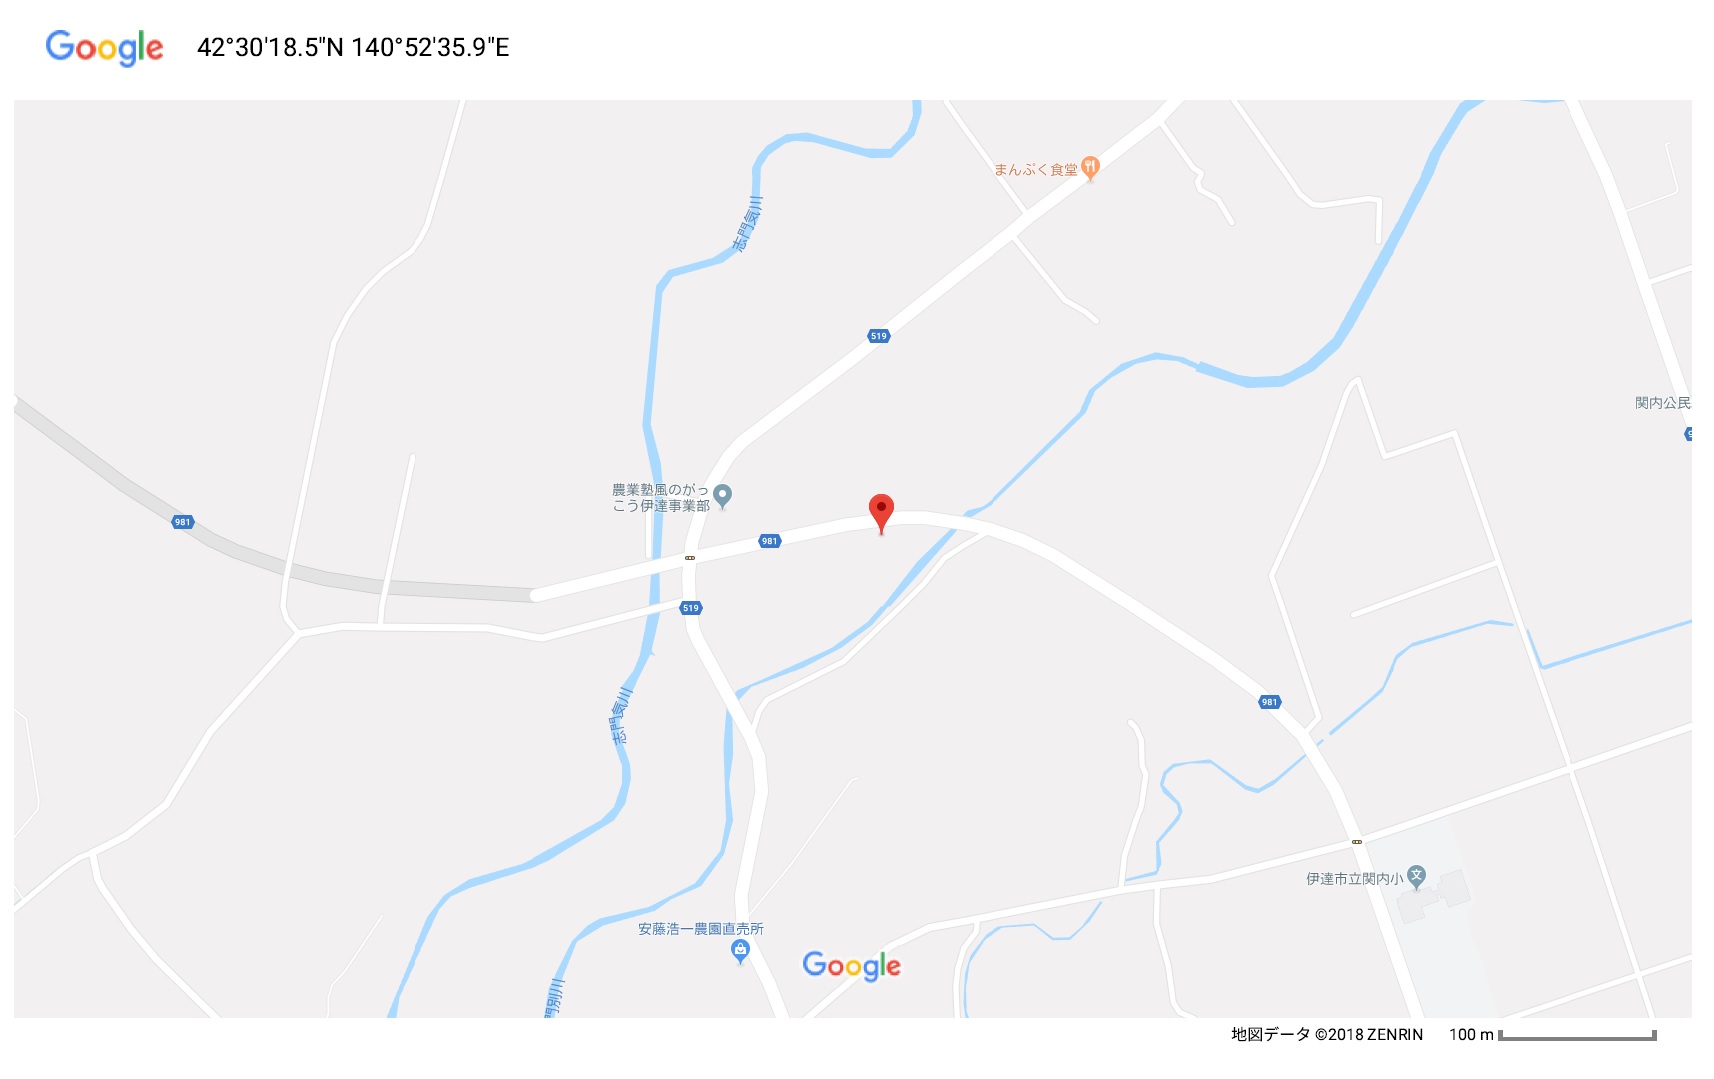 北海道伊達市西関内町176番2（管理番号：北海道伊達市西関内町176番2）の地図情報